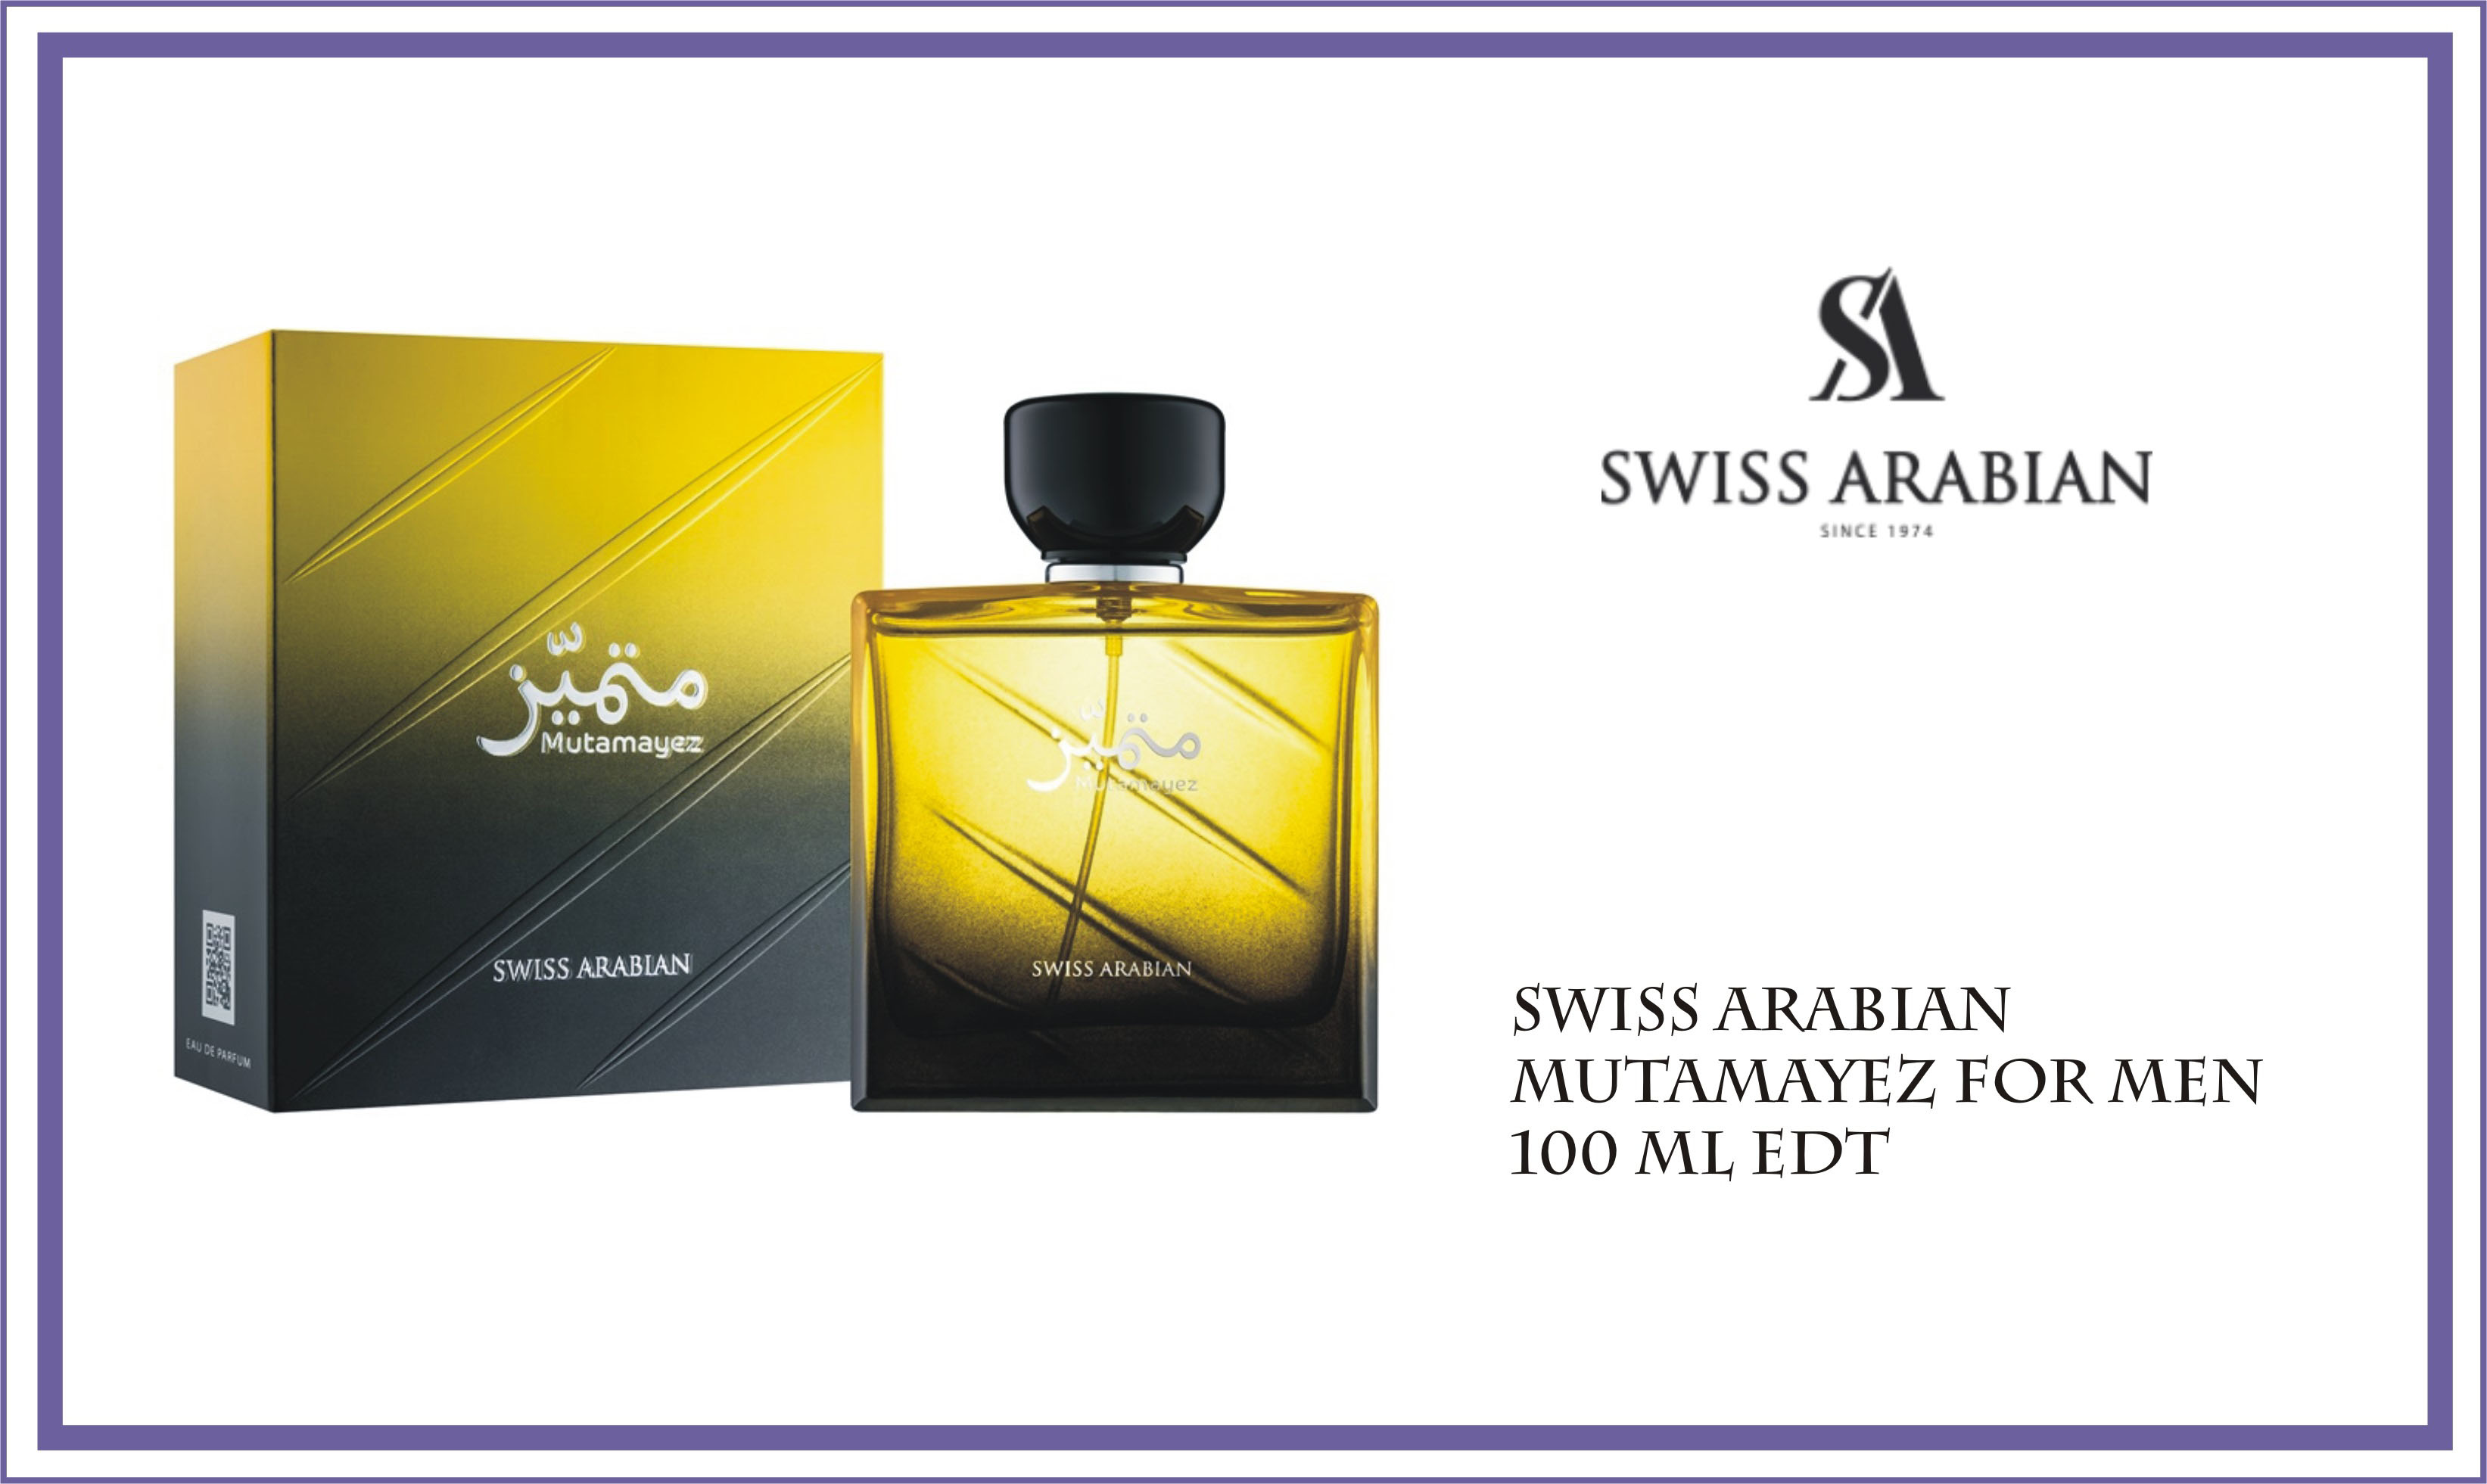 swiss-arabian-mutamayez-perfume-for-men-100-ml-edp